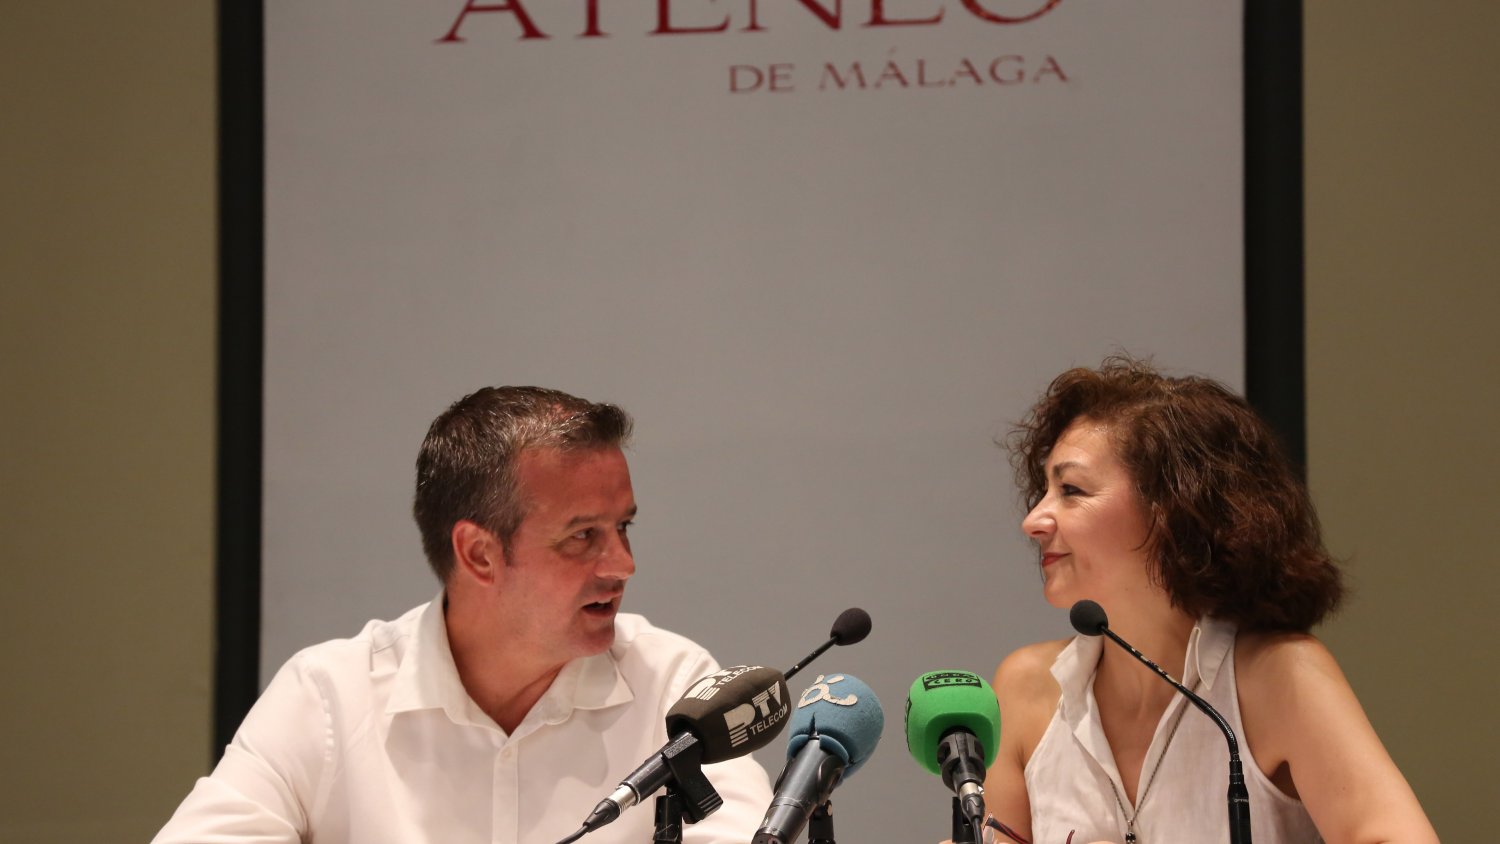 La Diputación y el Ateneo de Málaga organizan un ciclo de conferencias sobre el papel de la mujer en la historia de Málaga